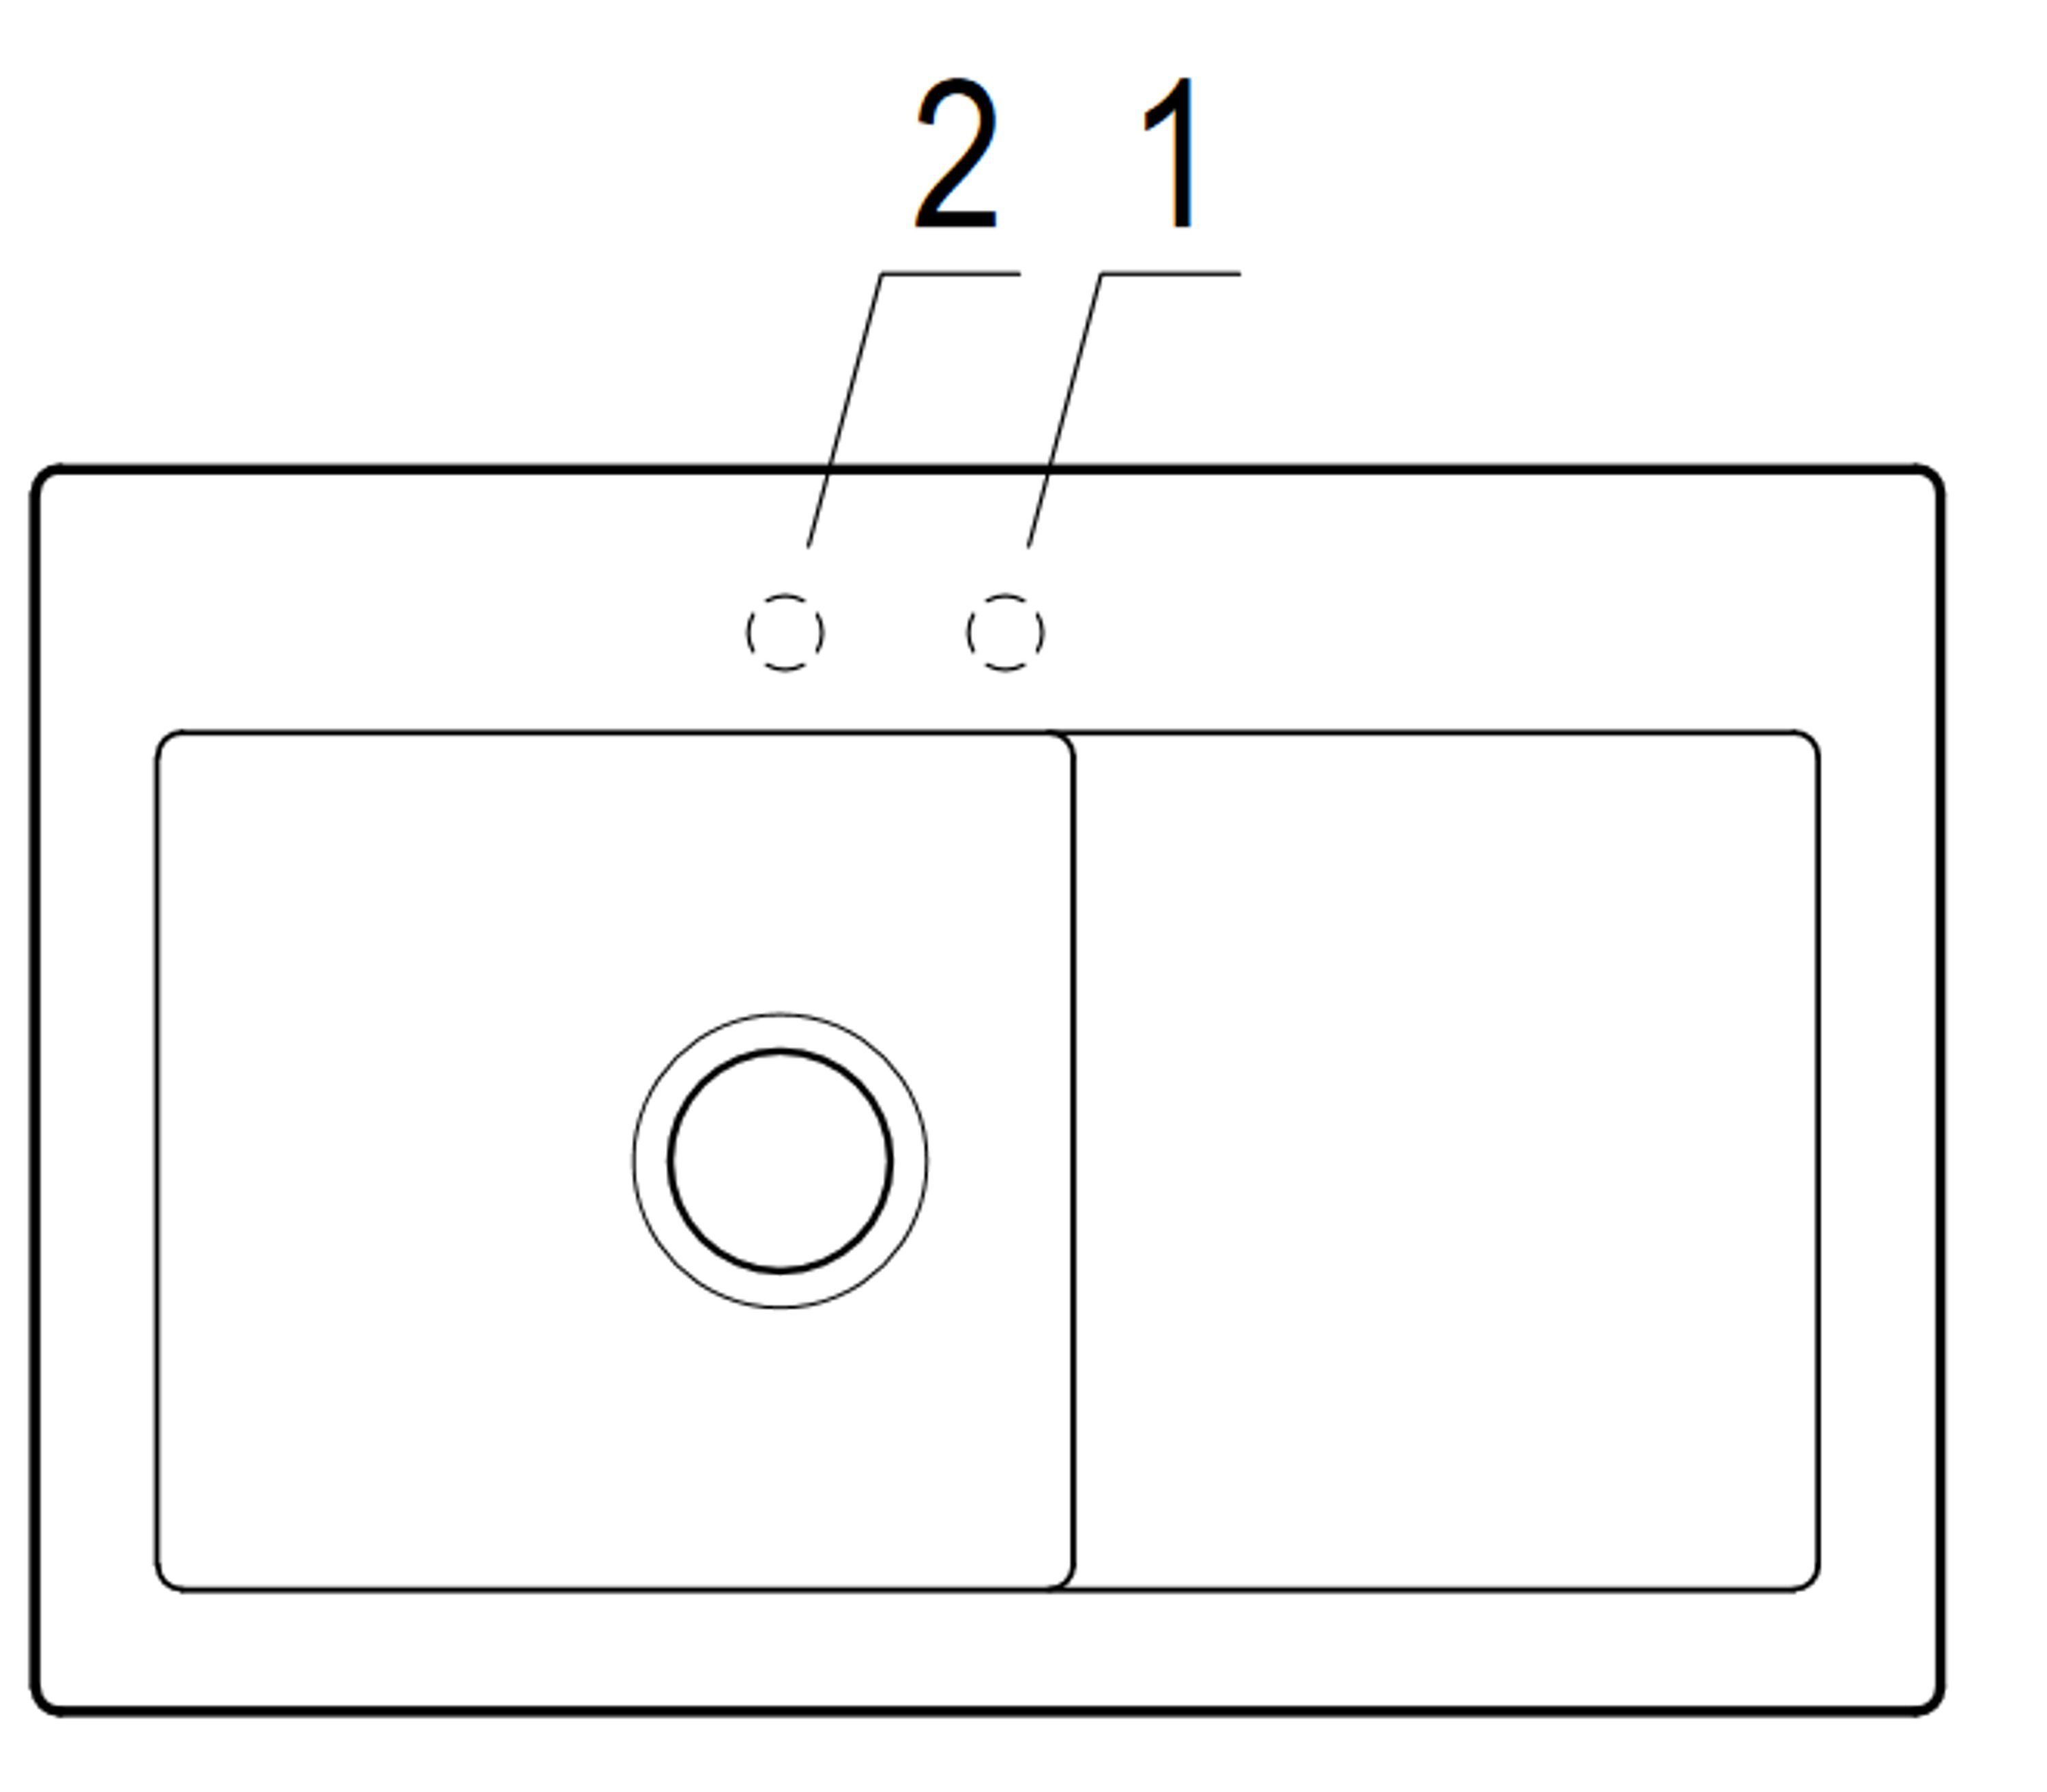 02 Küchenspüle Serie, 78/22 6772 Boch Subway & Becken links cm, möglich und Rechteckig, Villeroy i4, rechts